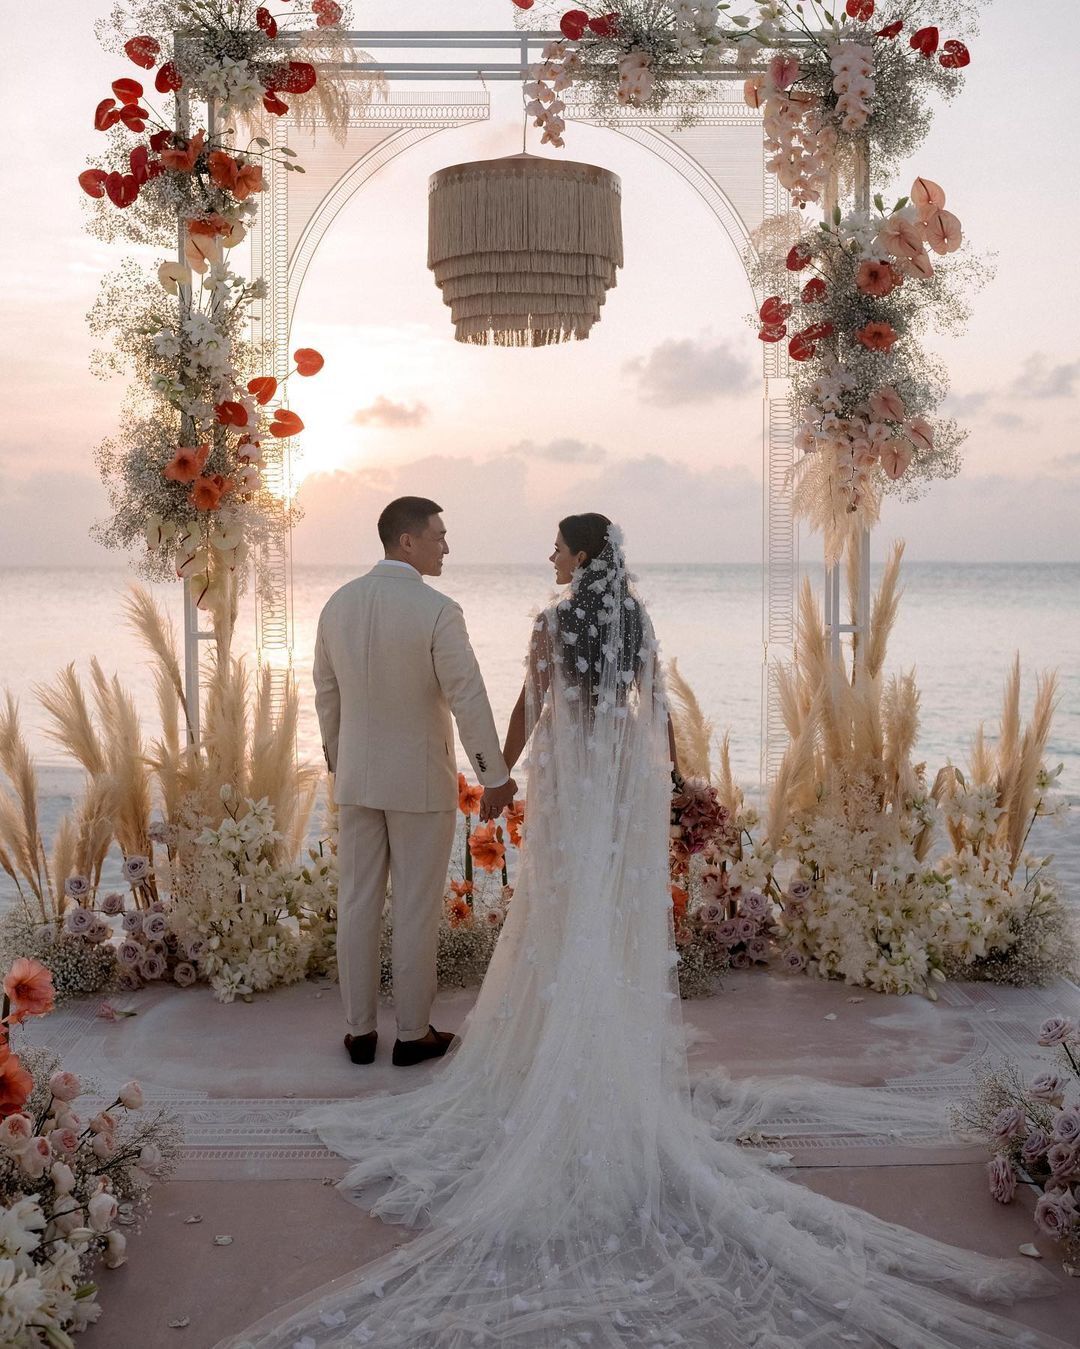 Весілля на Мальдівах